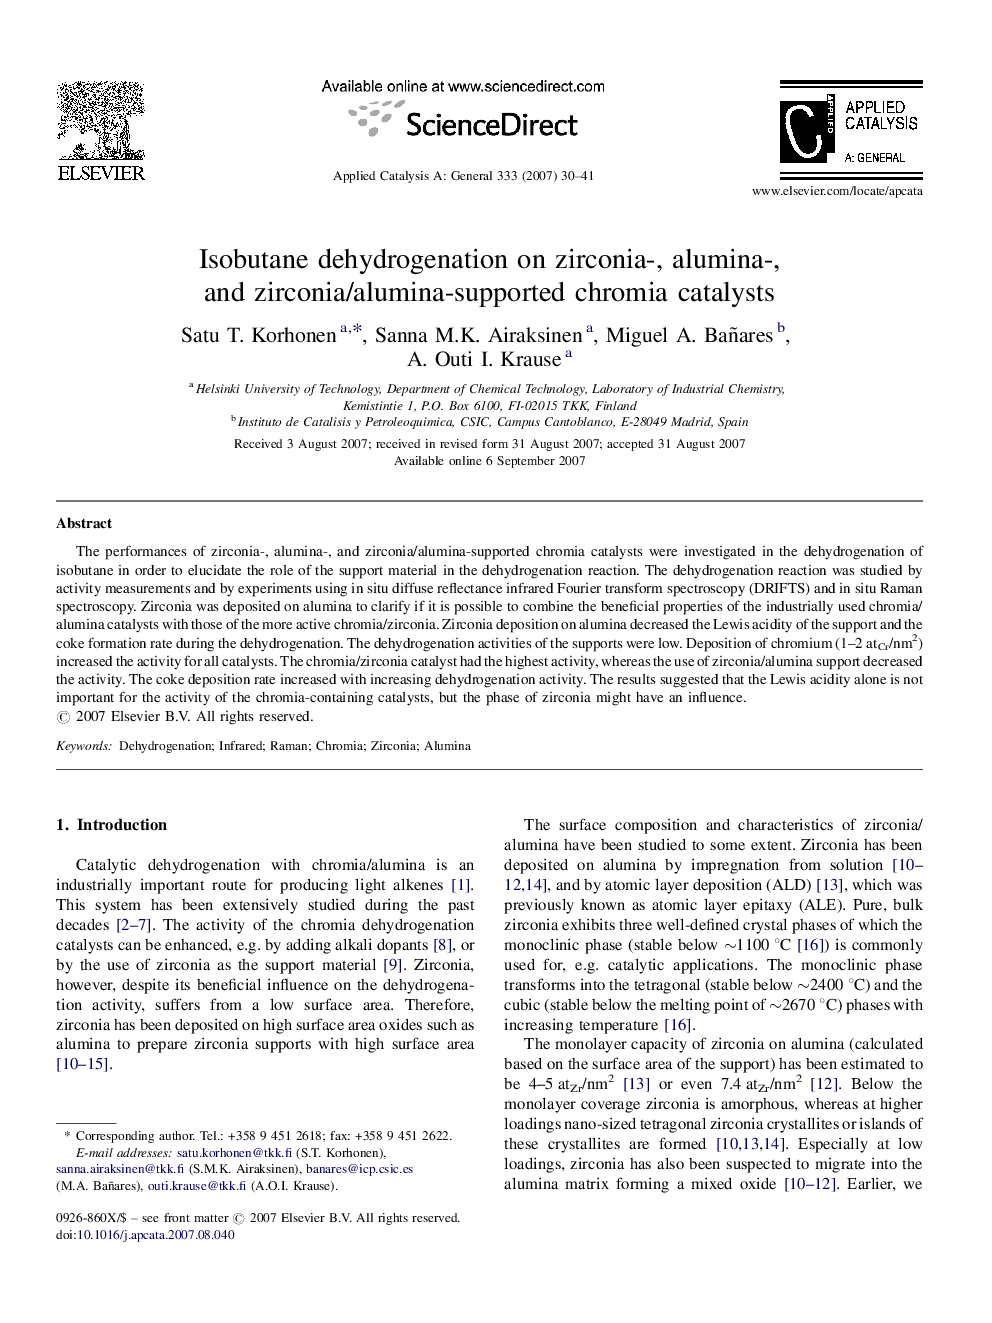 Isobutane dehydrogenation on zirconia-, alumina-, and zirconia/alumina-supported chromia catalysts